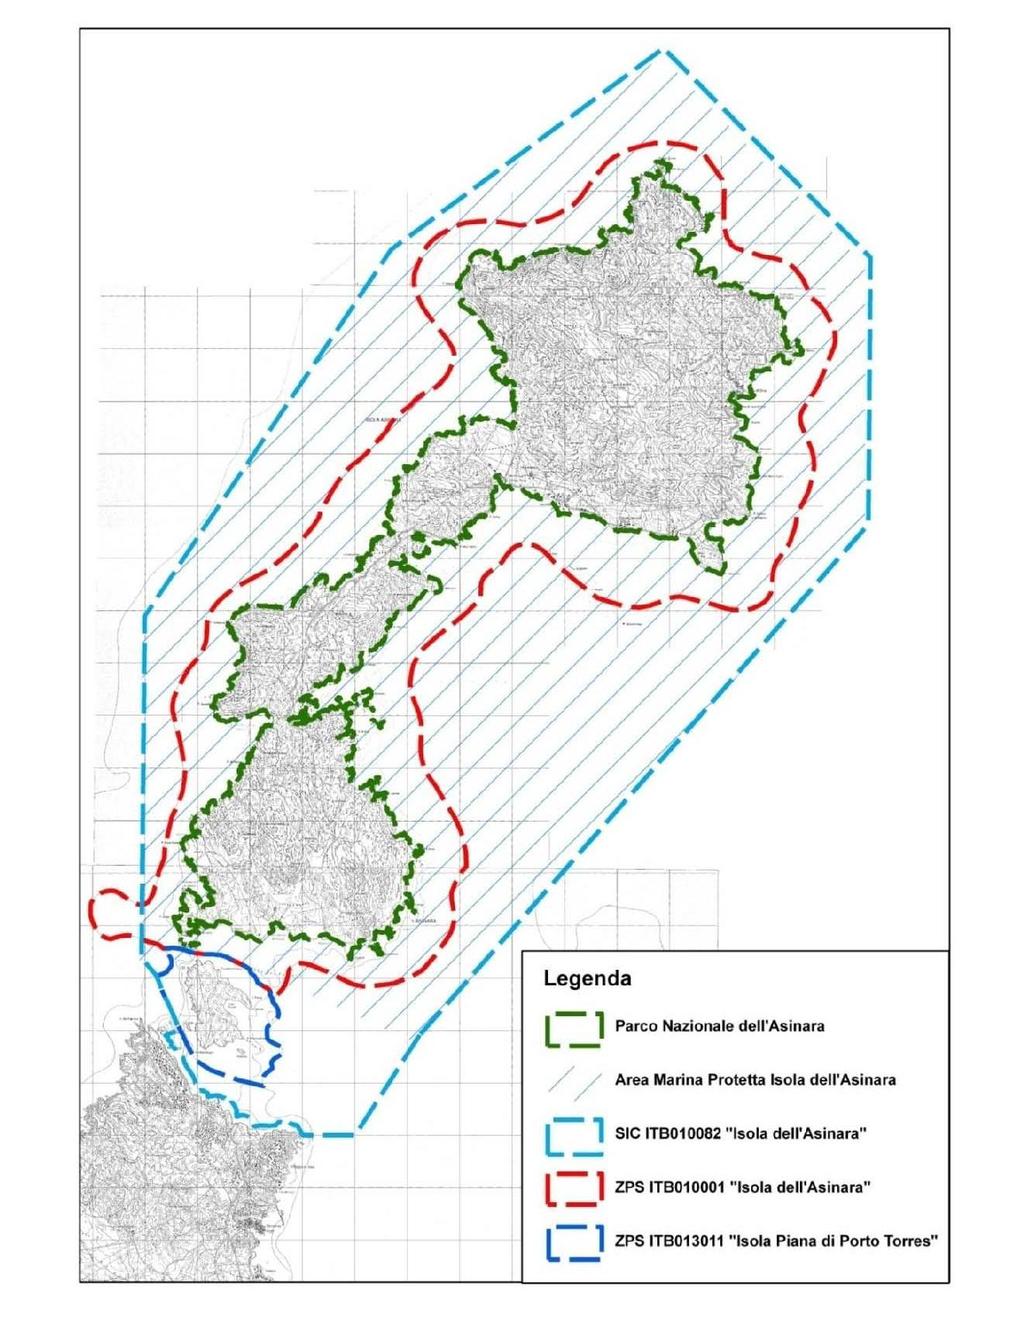 RETE NATURA 2000 L isola dell Asinara è interessata da due aree Natura 2000, una Zona Speciale di Conservazione e una Zona di Protezione Speciale: - ZSC